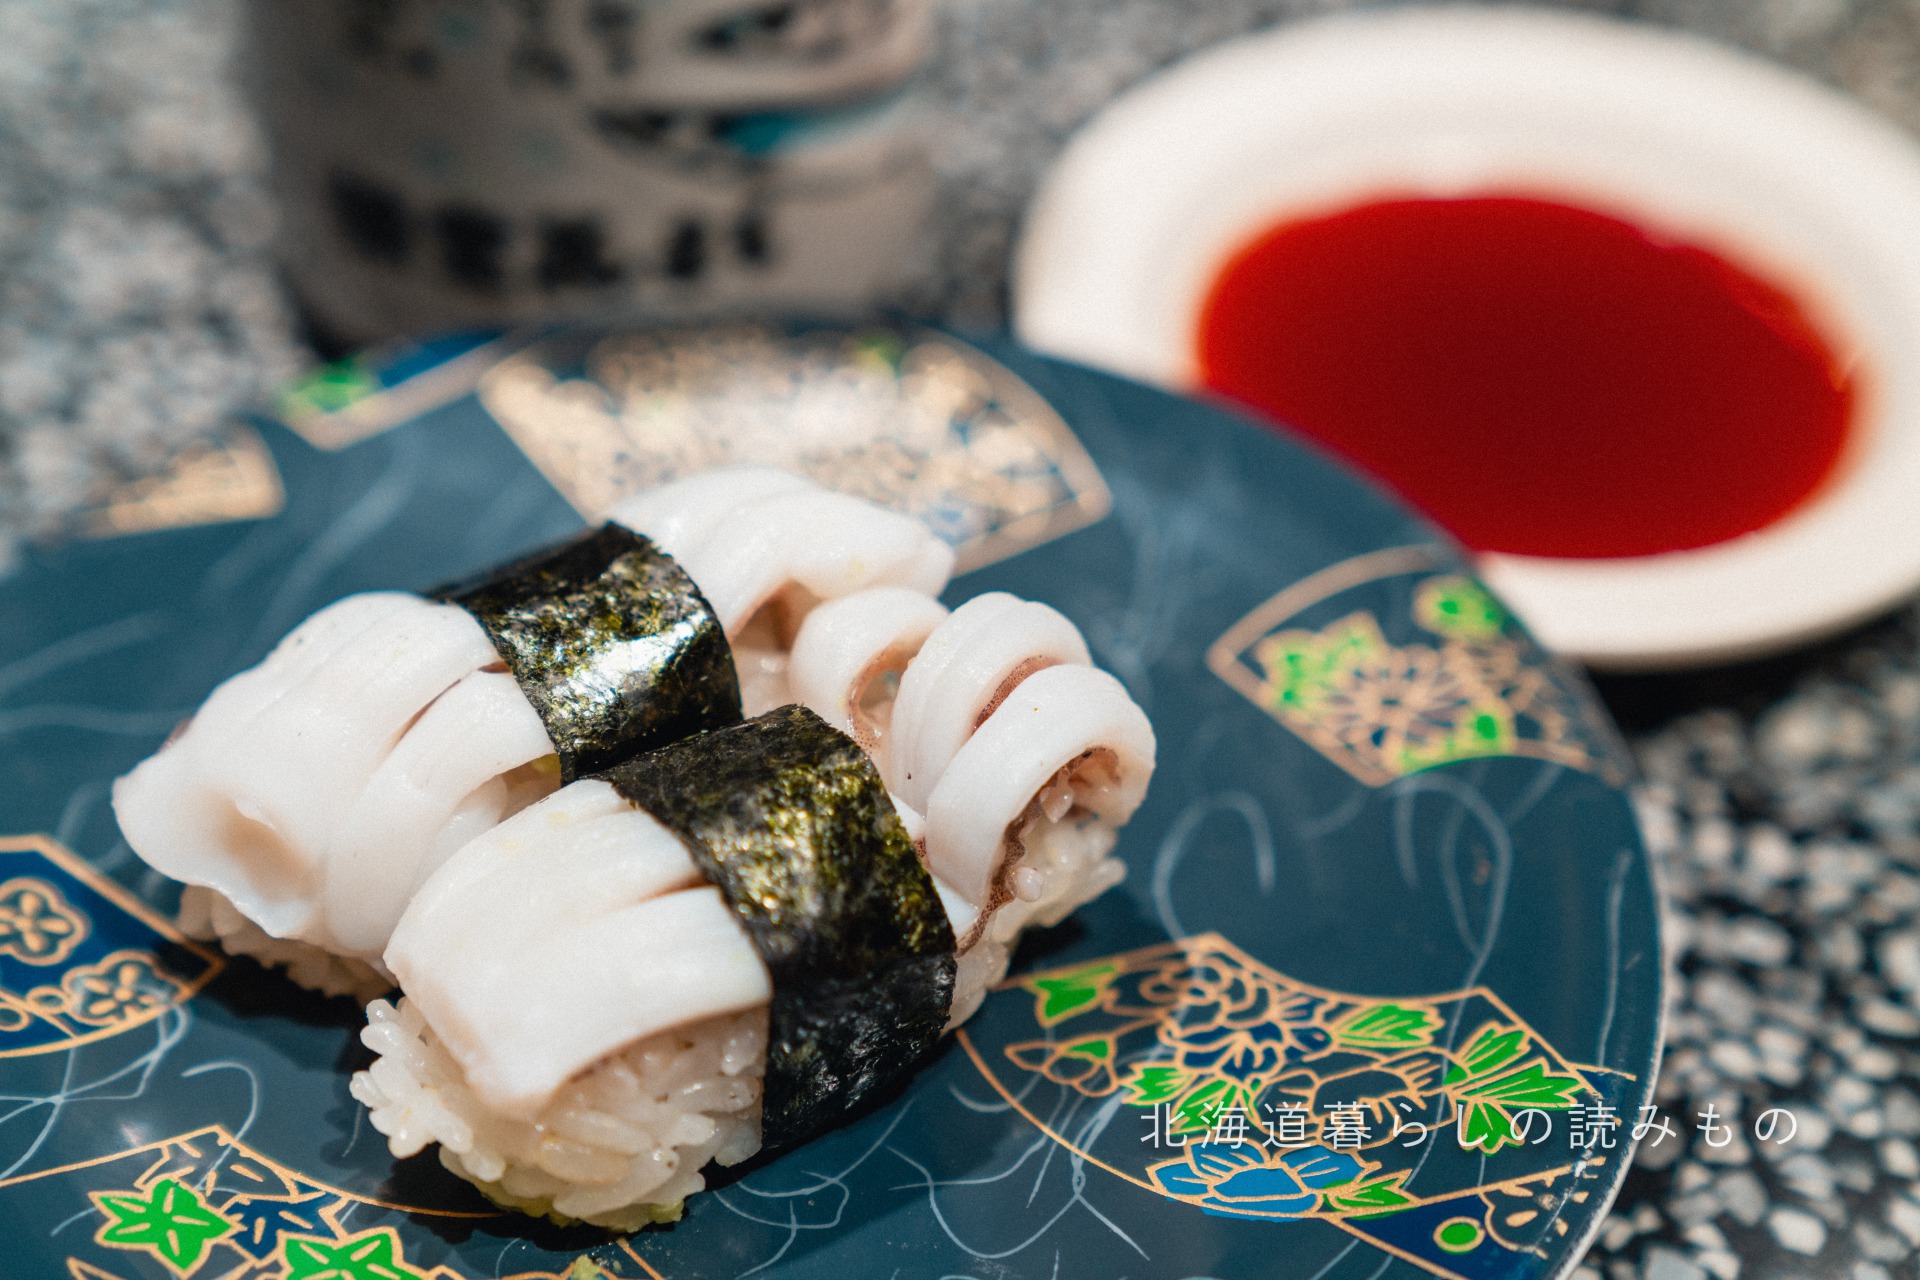 迴轉壽司根室花丸的菜單上的「墨魚脚握壽司」